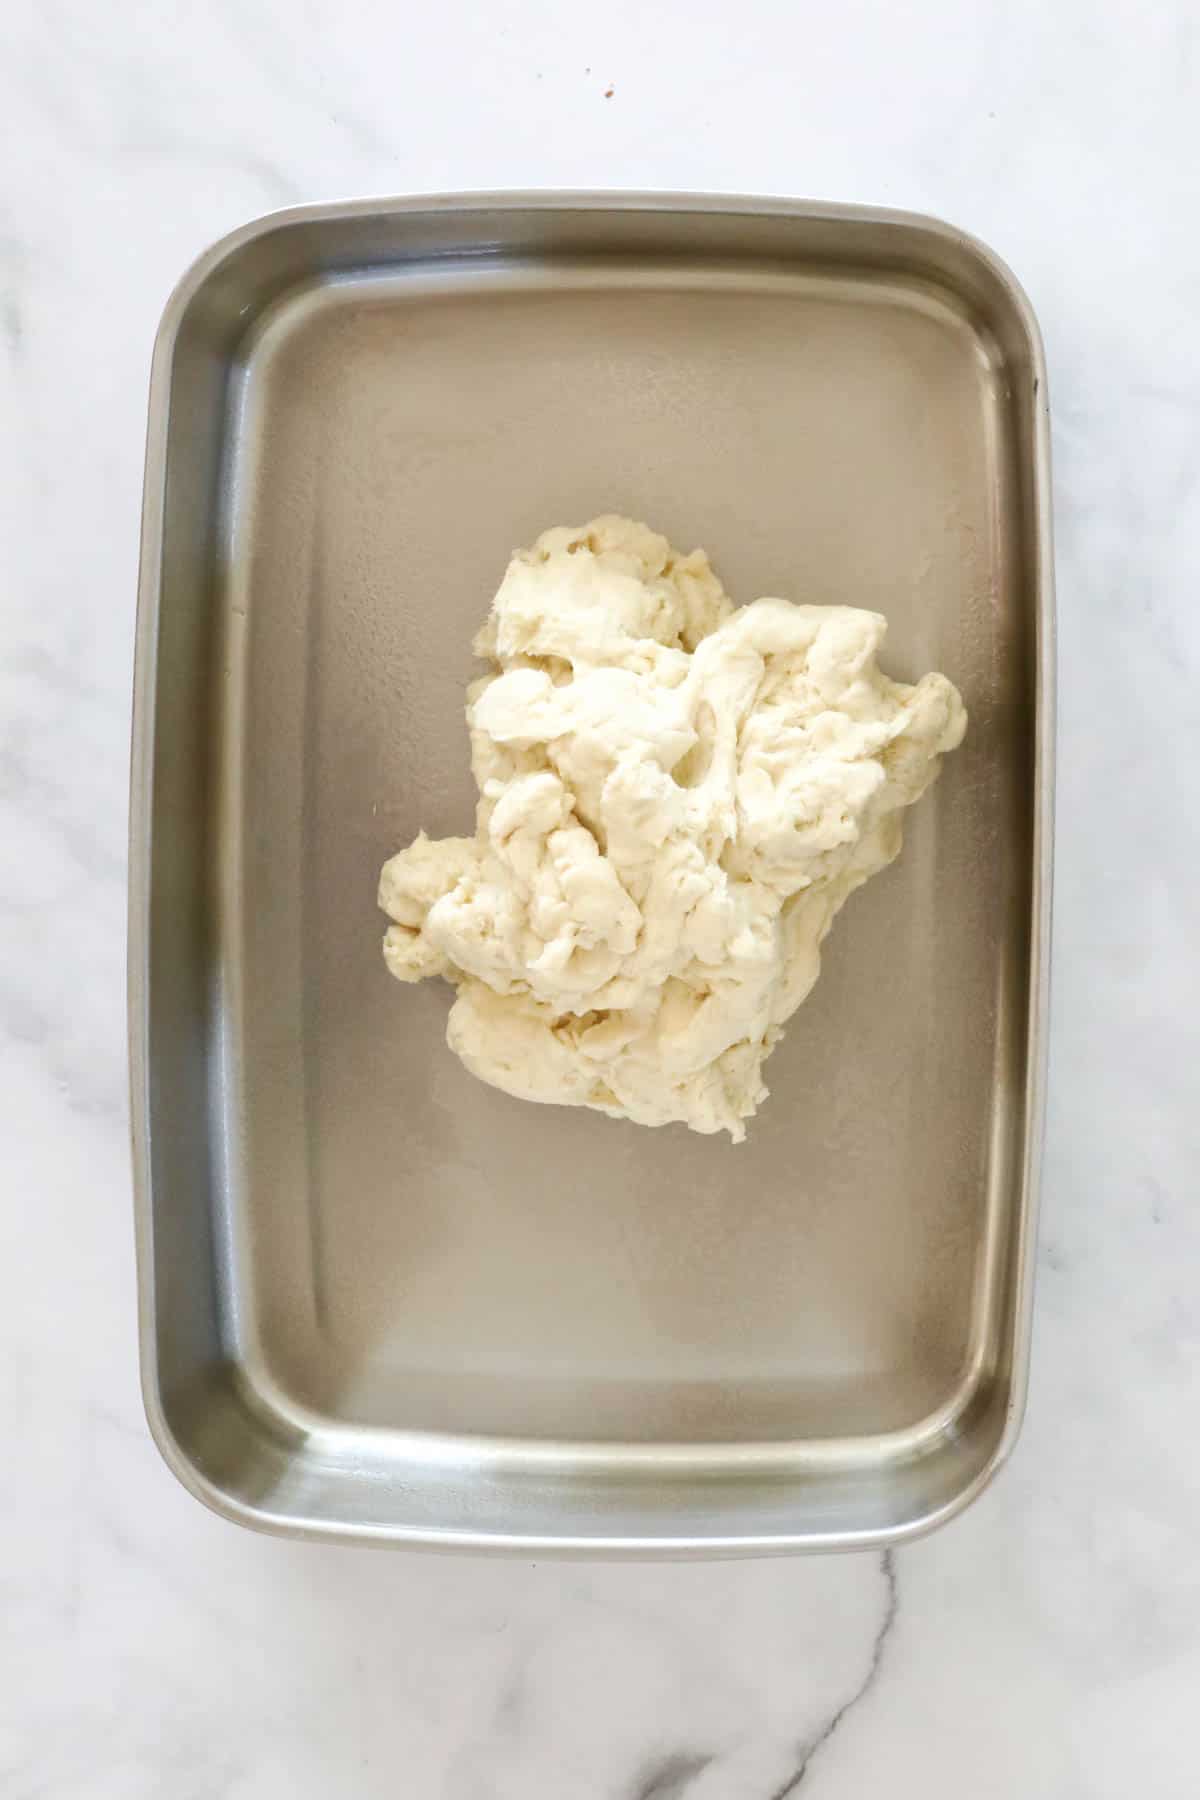 Un-risen dough in a ThermoServer.